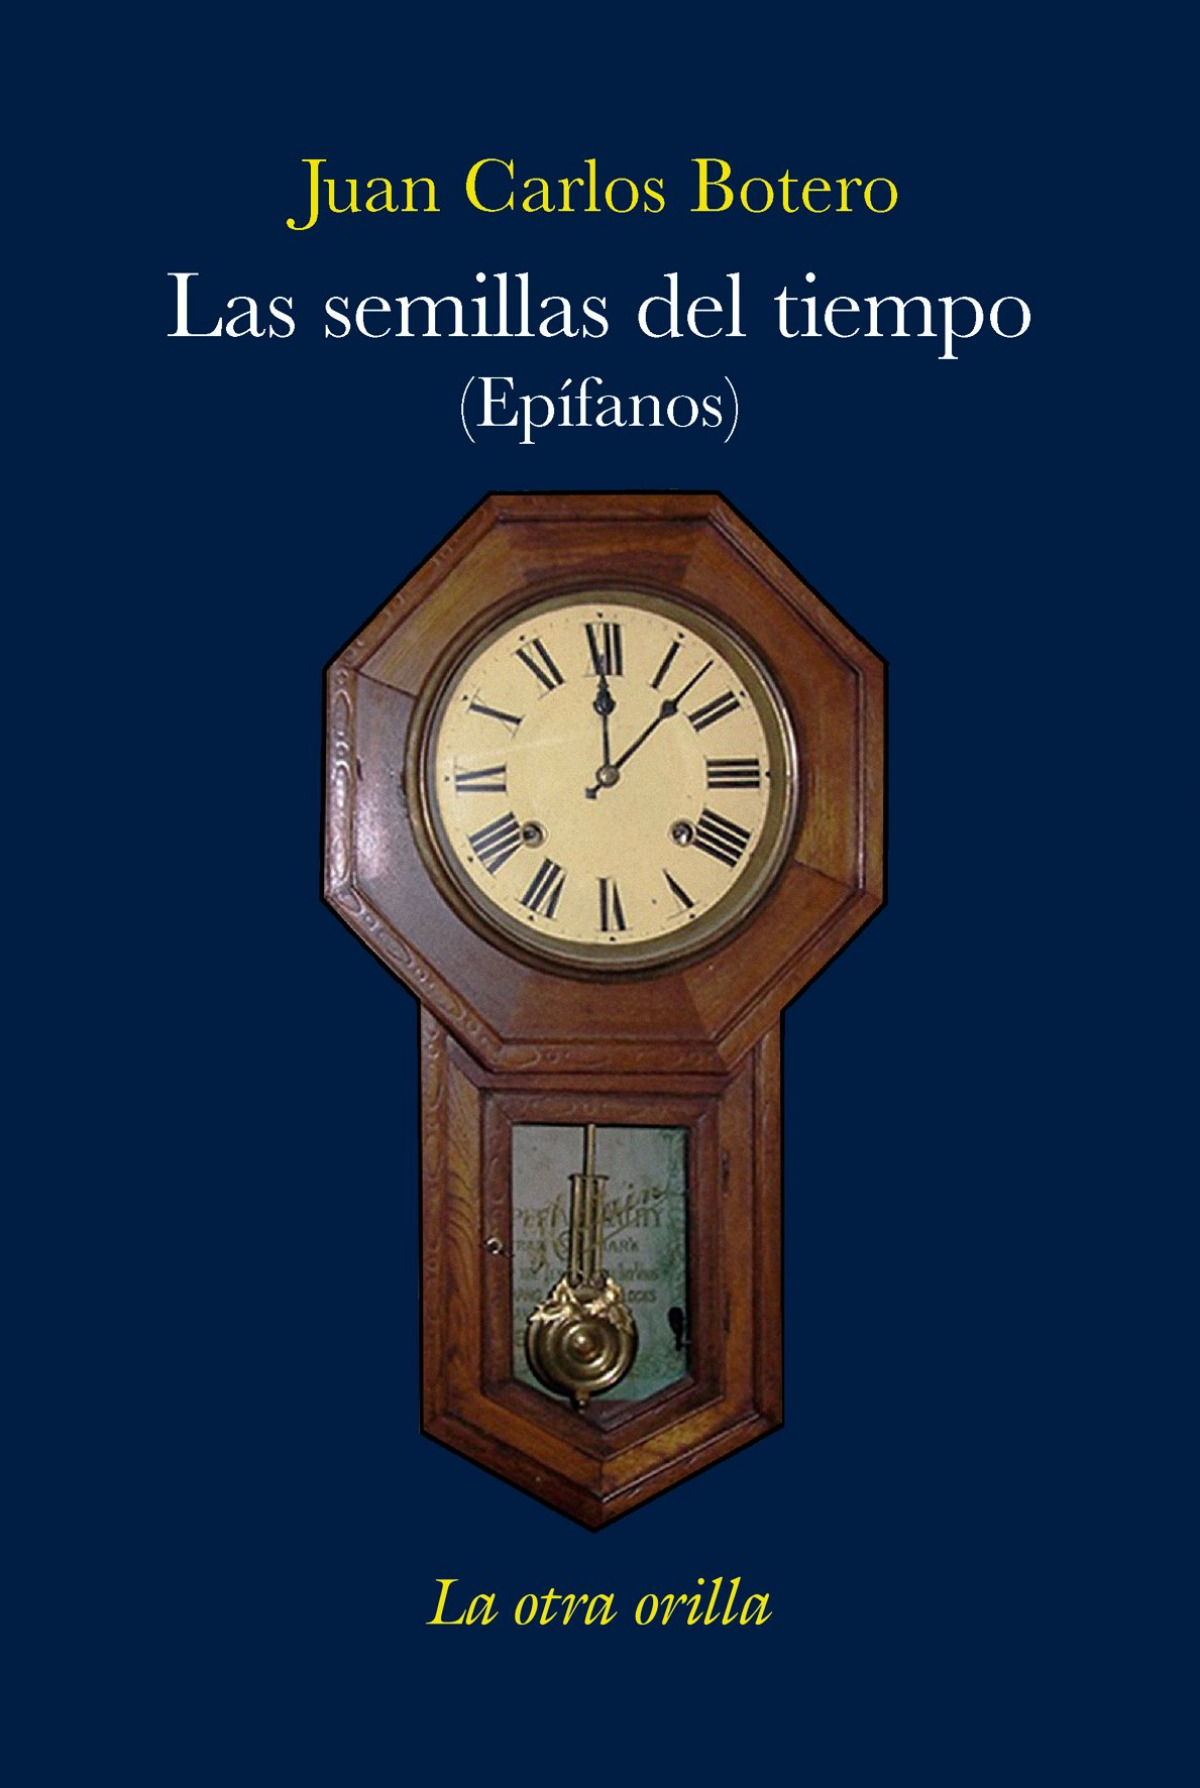 Semillas del tiempo epifanos - Botero, Juan